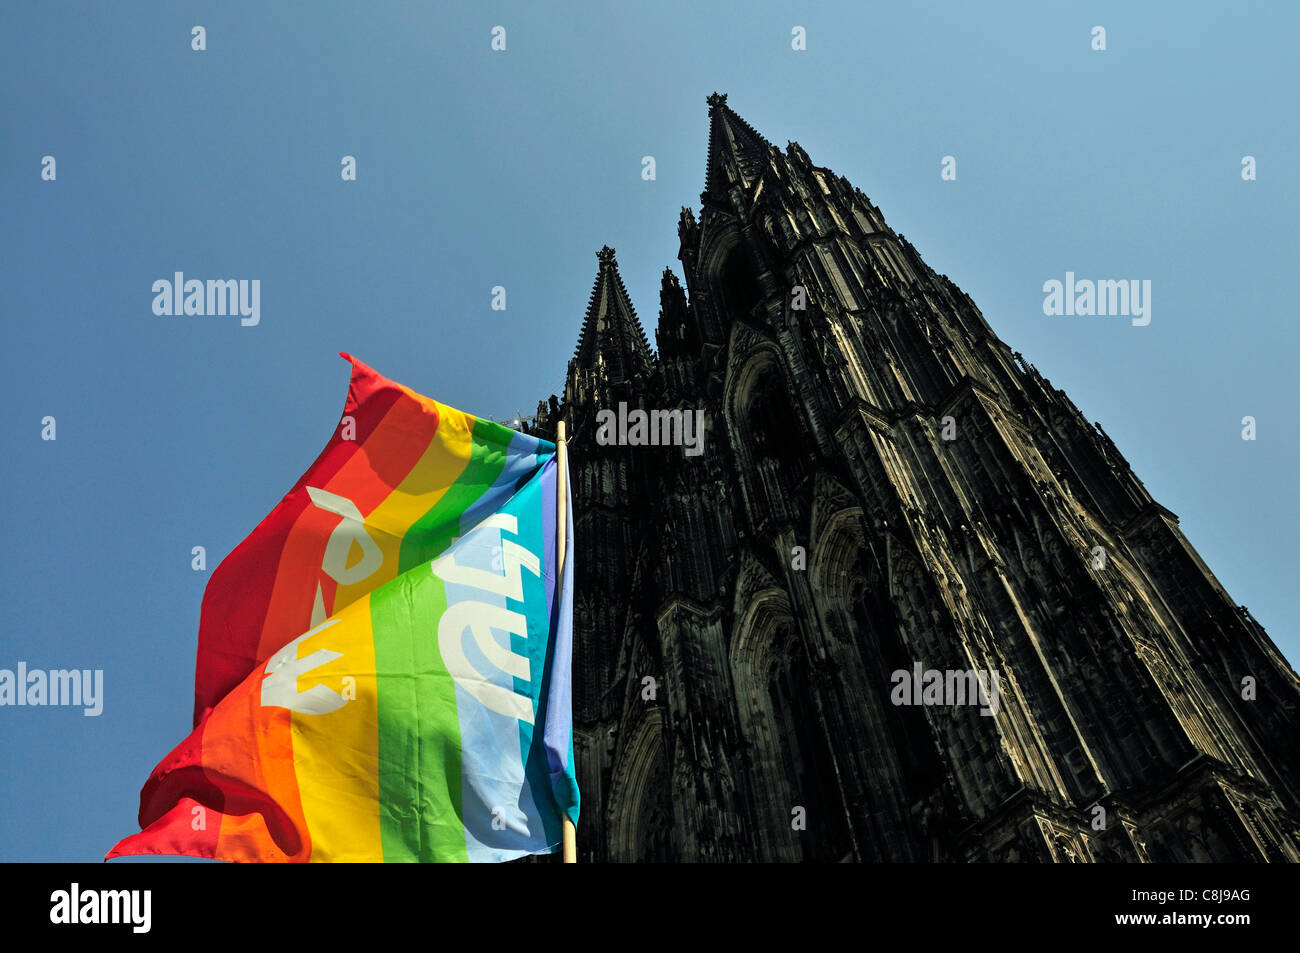 L'architecture, l'Allemagne, la cathédrale, le dôme, l'Europe, drapeau, drapeau, bannière, symbole de la paix, des drapeaux de la paix, la paix des signes, cathédrale, l'église, Co Banque D'Images